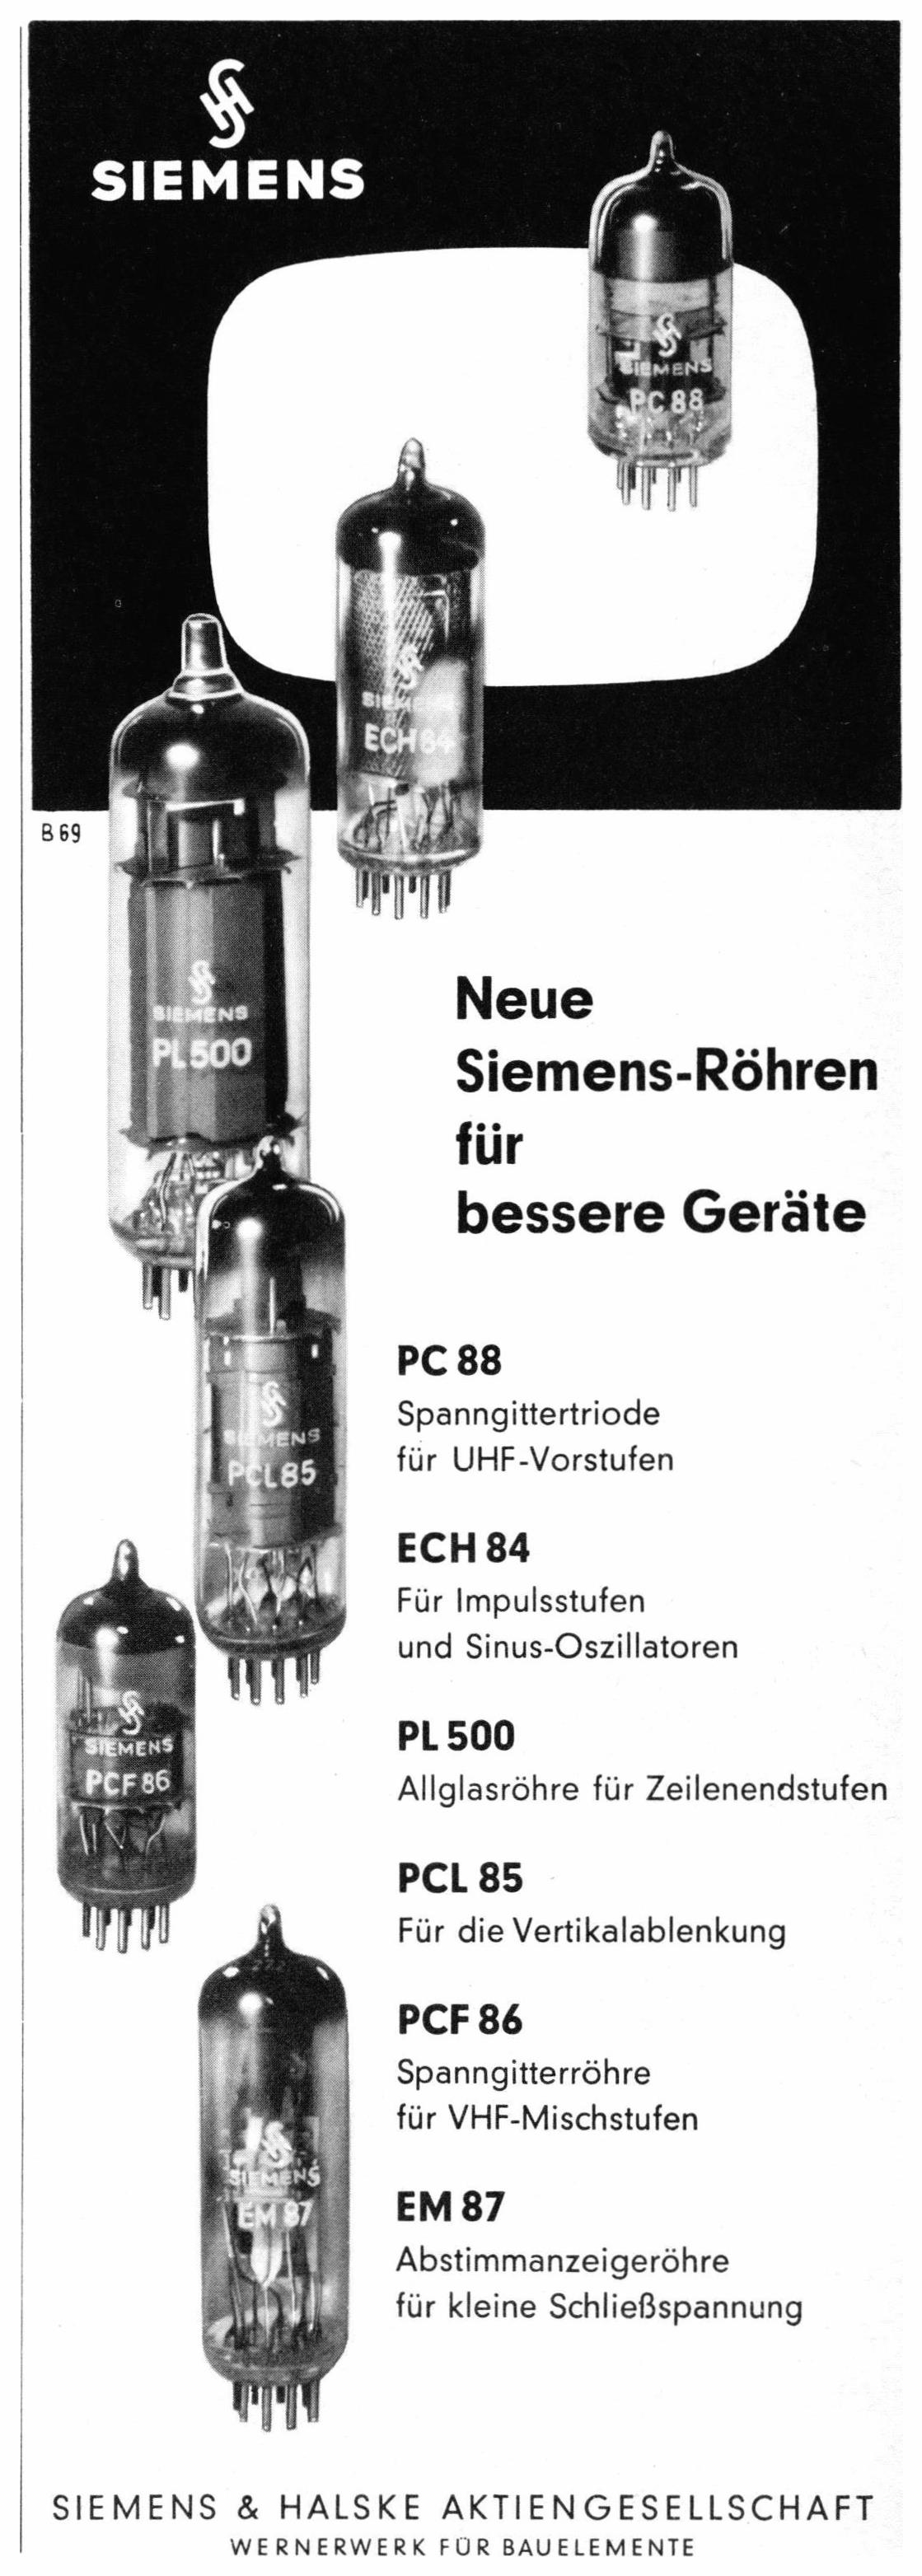 Siemens 1961 5.jpg